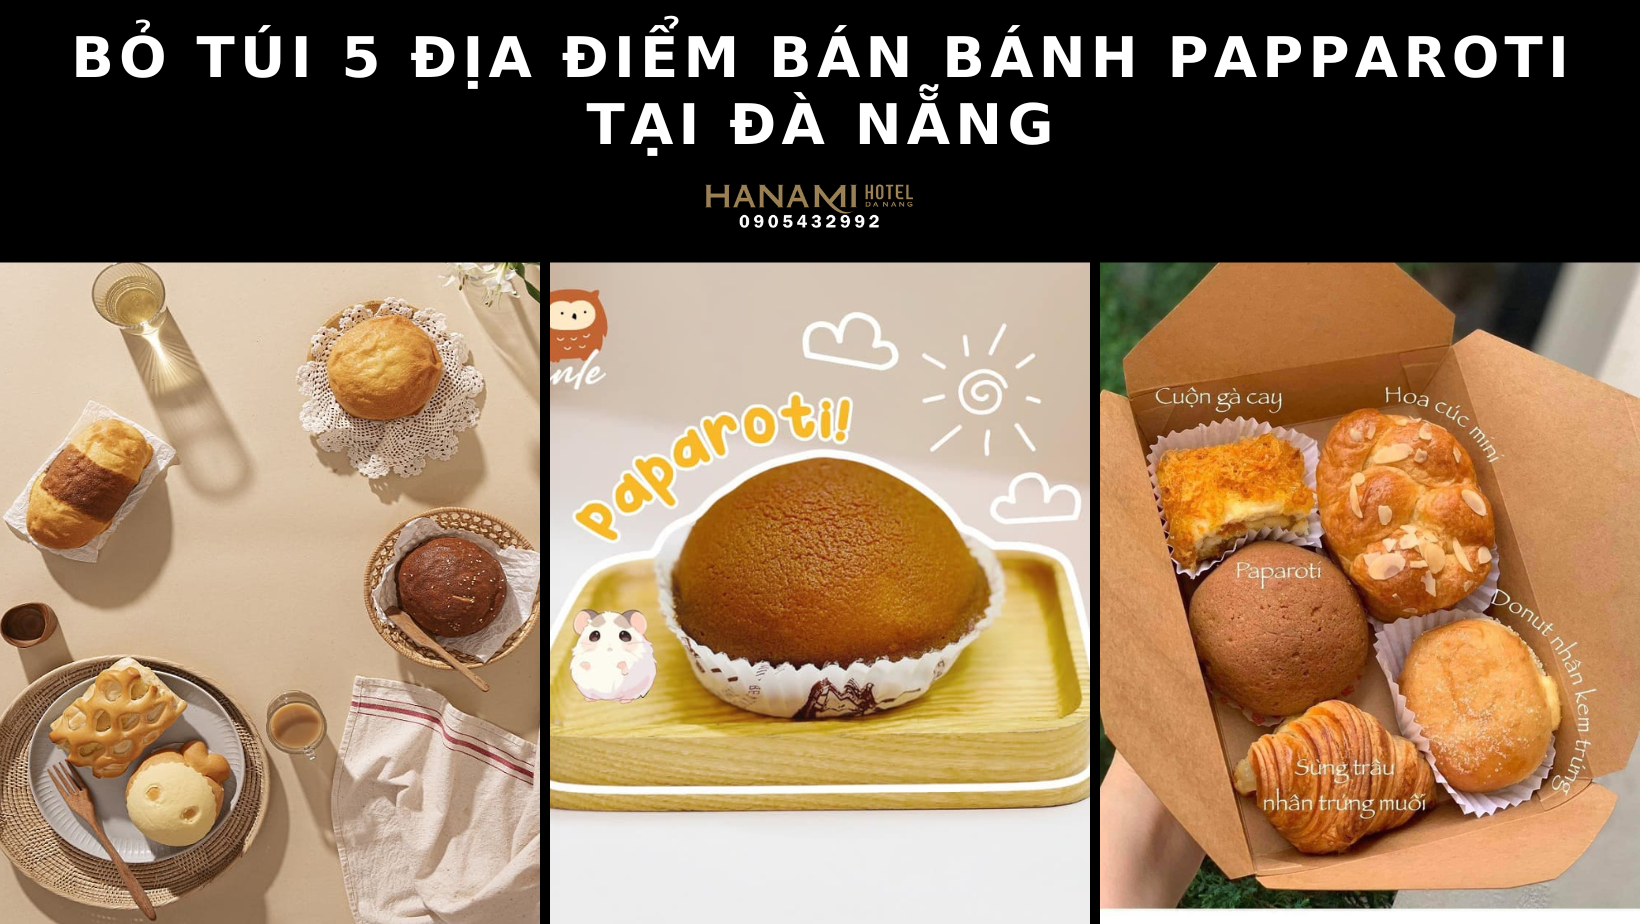 Bỏ túi 5 địa điểm bán bánh Papparoti tại Đà Nẵng